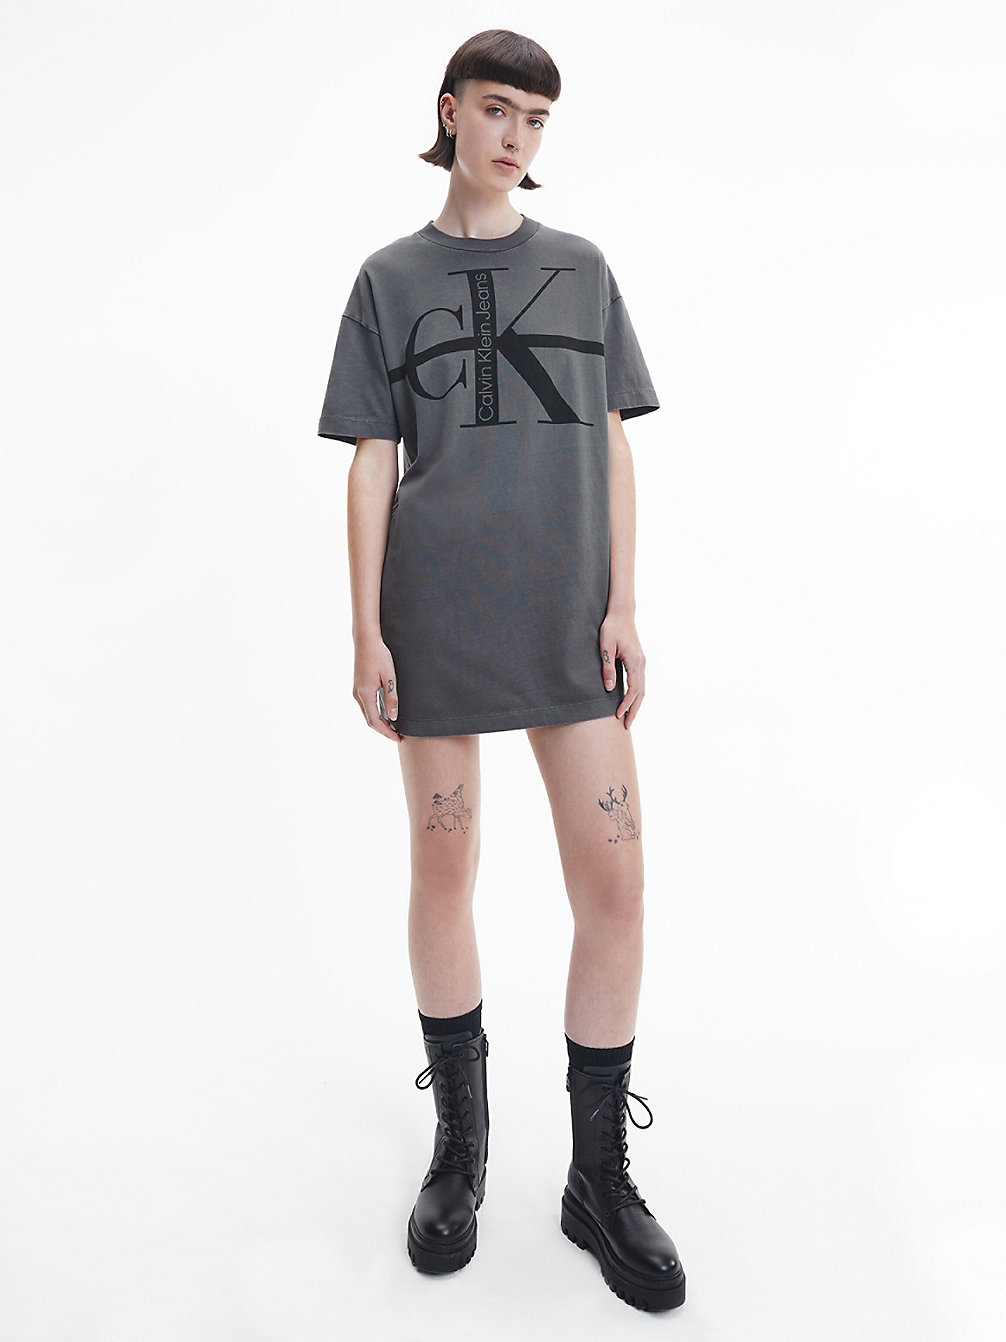 INDUSTRIAL GREY > Swobodna Sukienka Typu T-Shirt Z Monogramem > undefined Kobiety - Calvin Klein